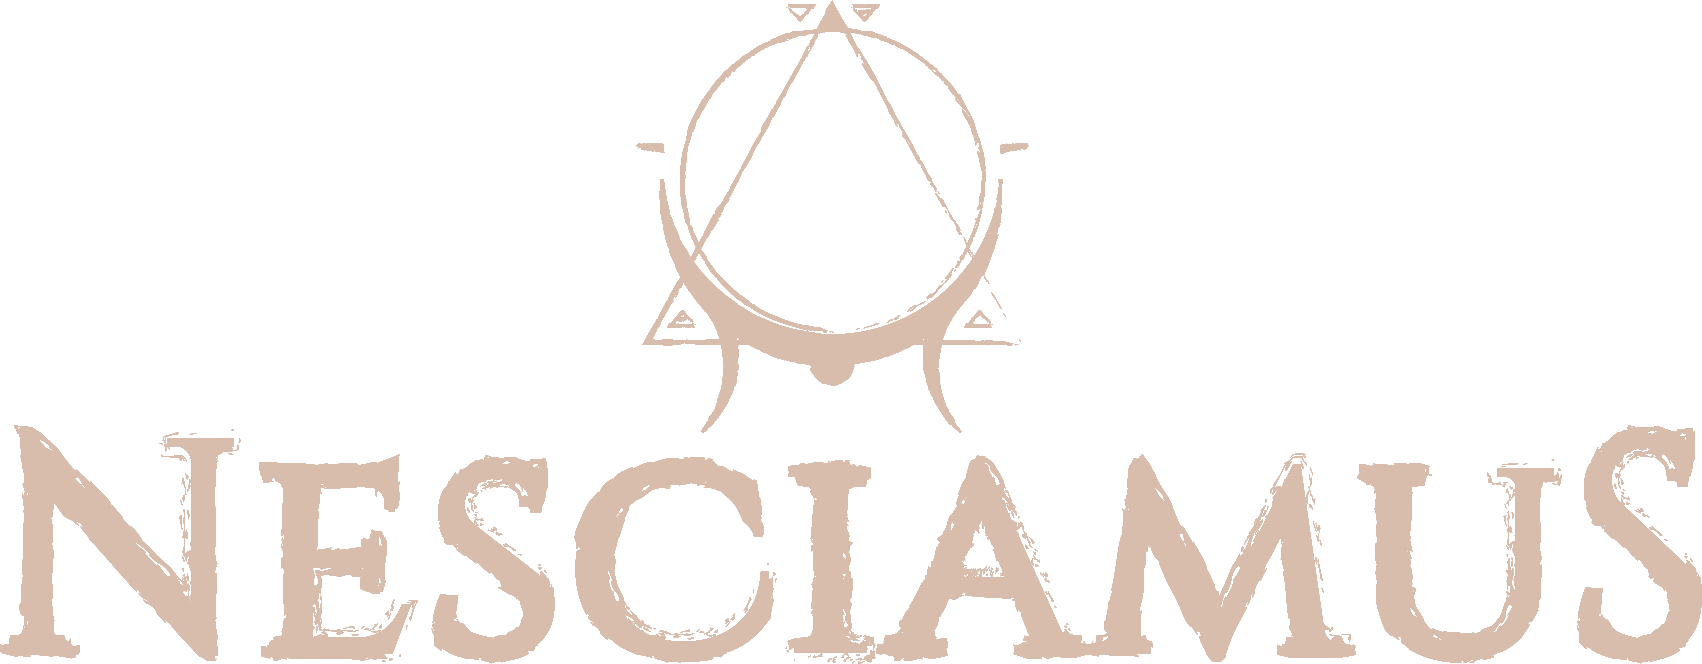 Nescialmus Logo